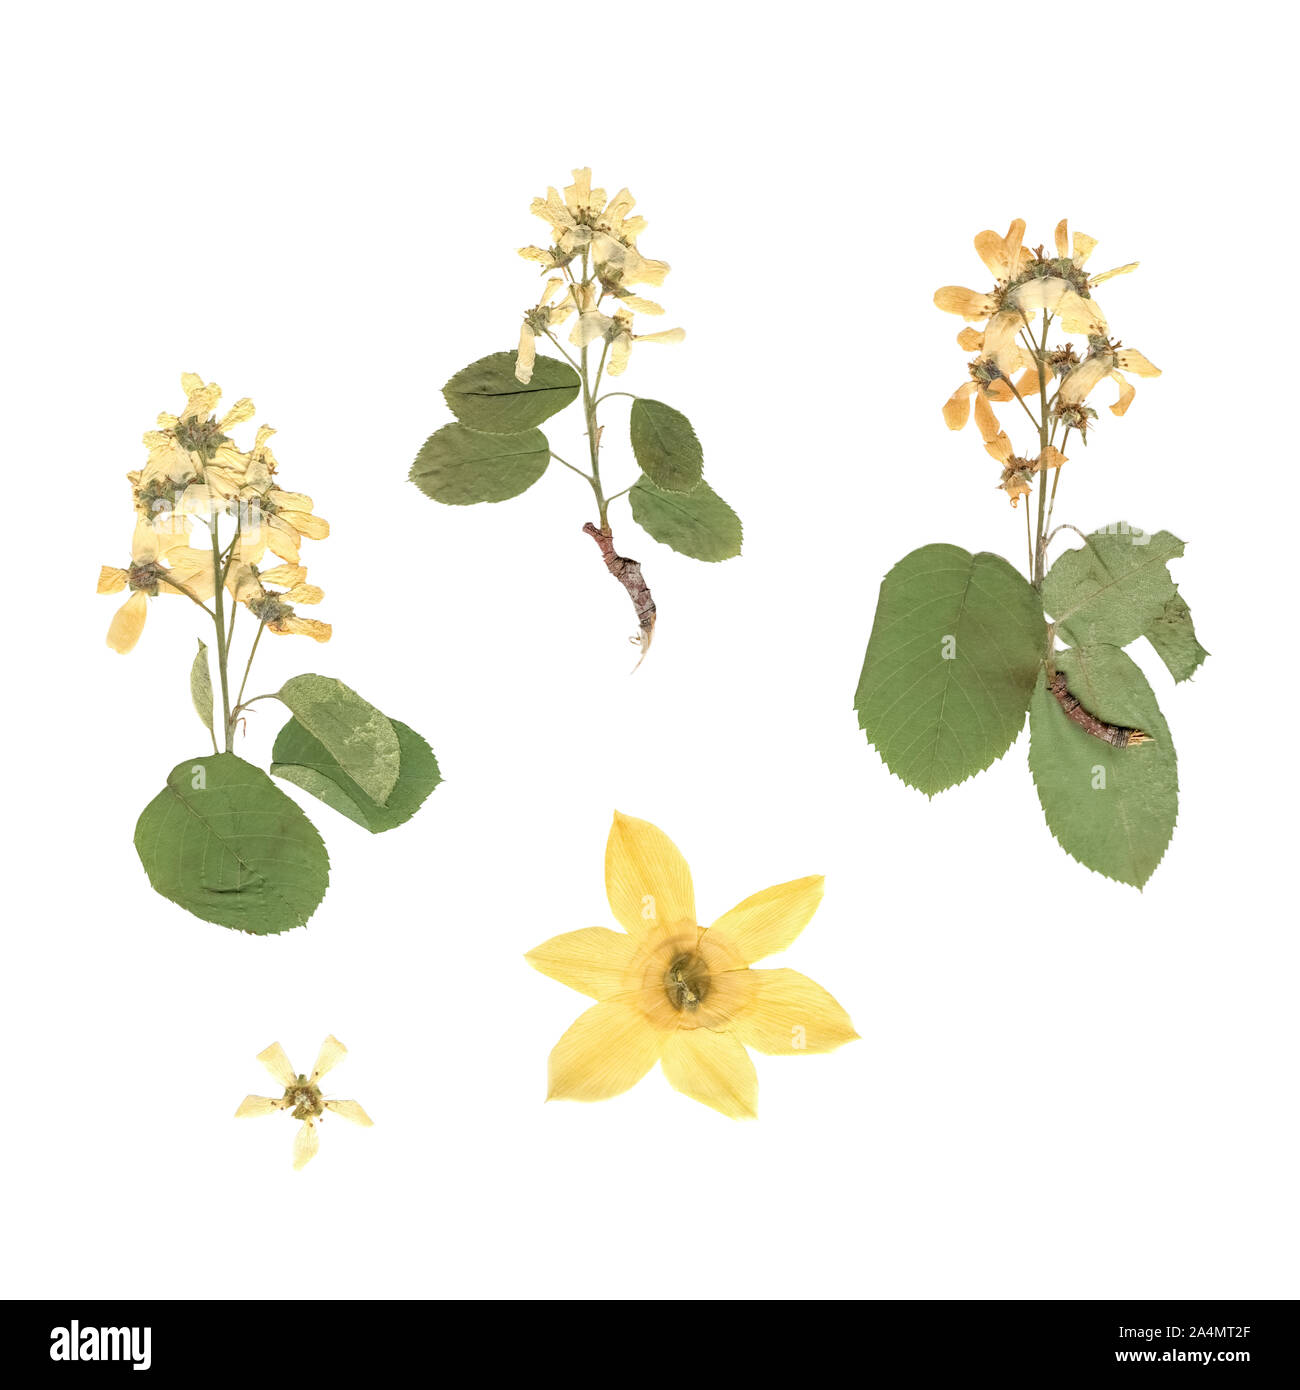 Herbier. Composition de plantes séchées et pressées avec des fleurs blanches et jaunes sur fond blanc. Banque D'Images